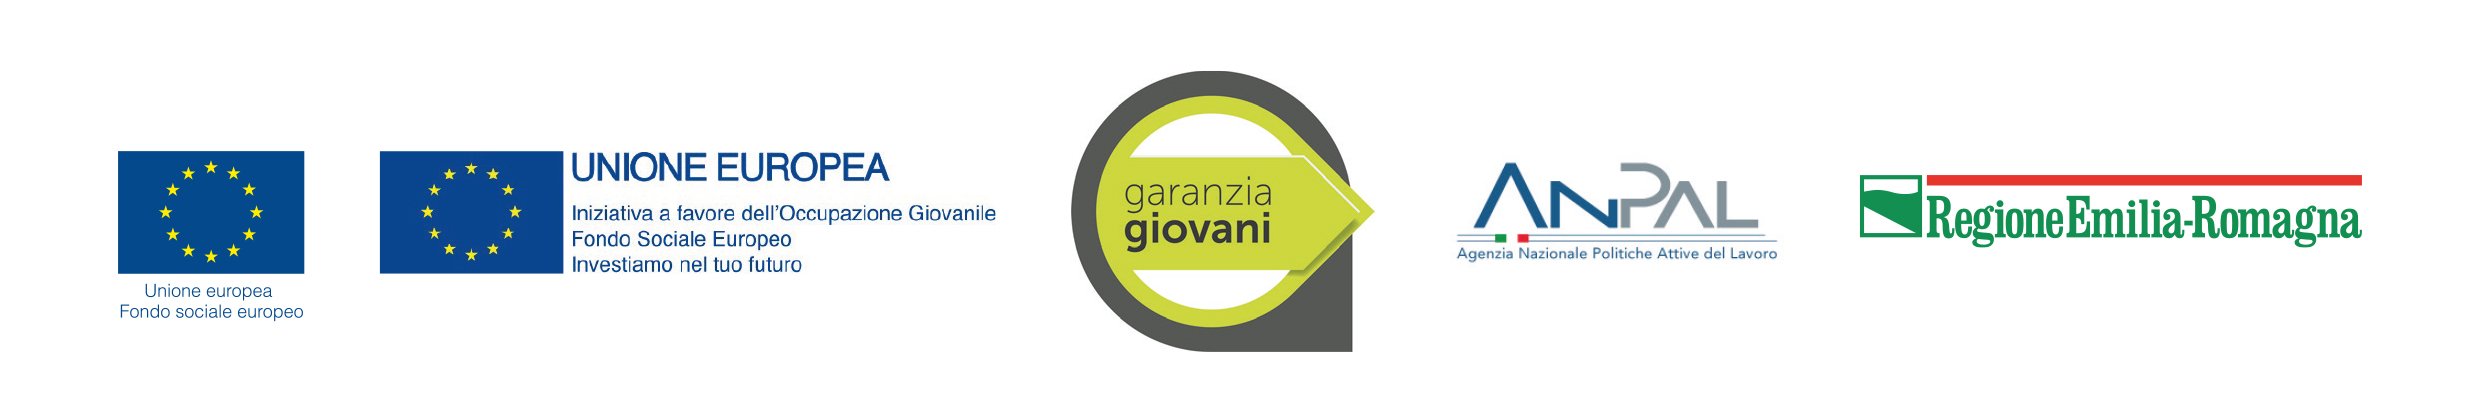 Haeder istituzionale Garanzia Giovani Emilia-Romagna